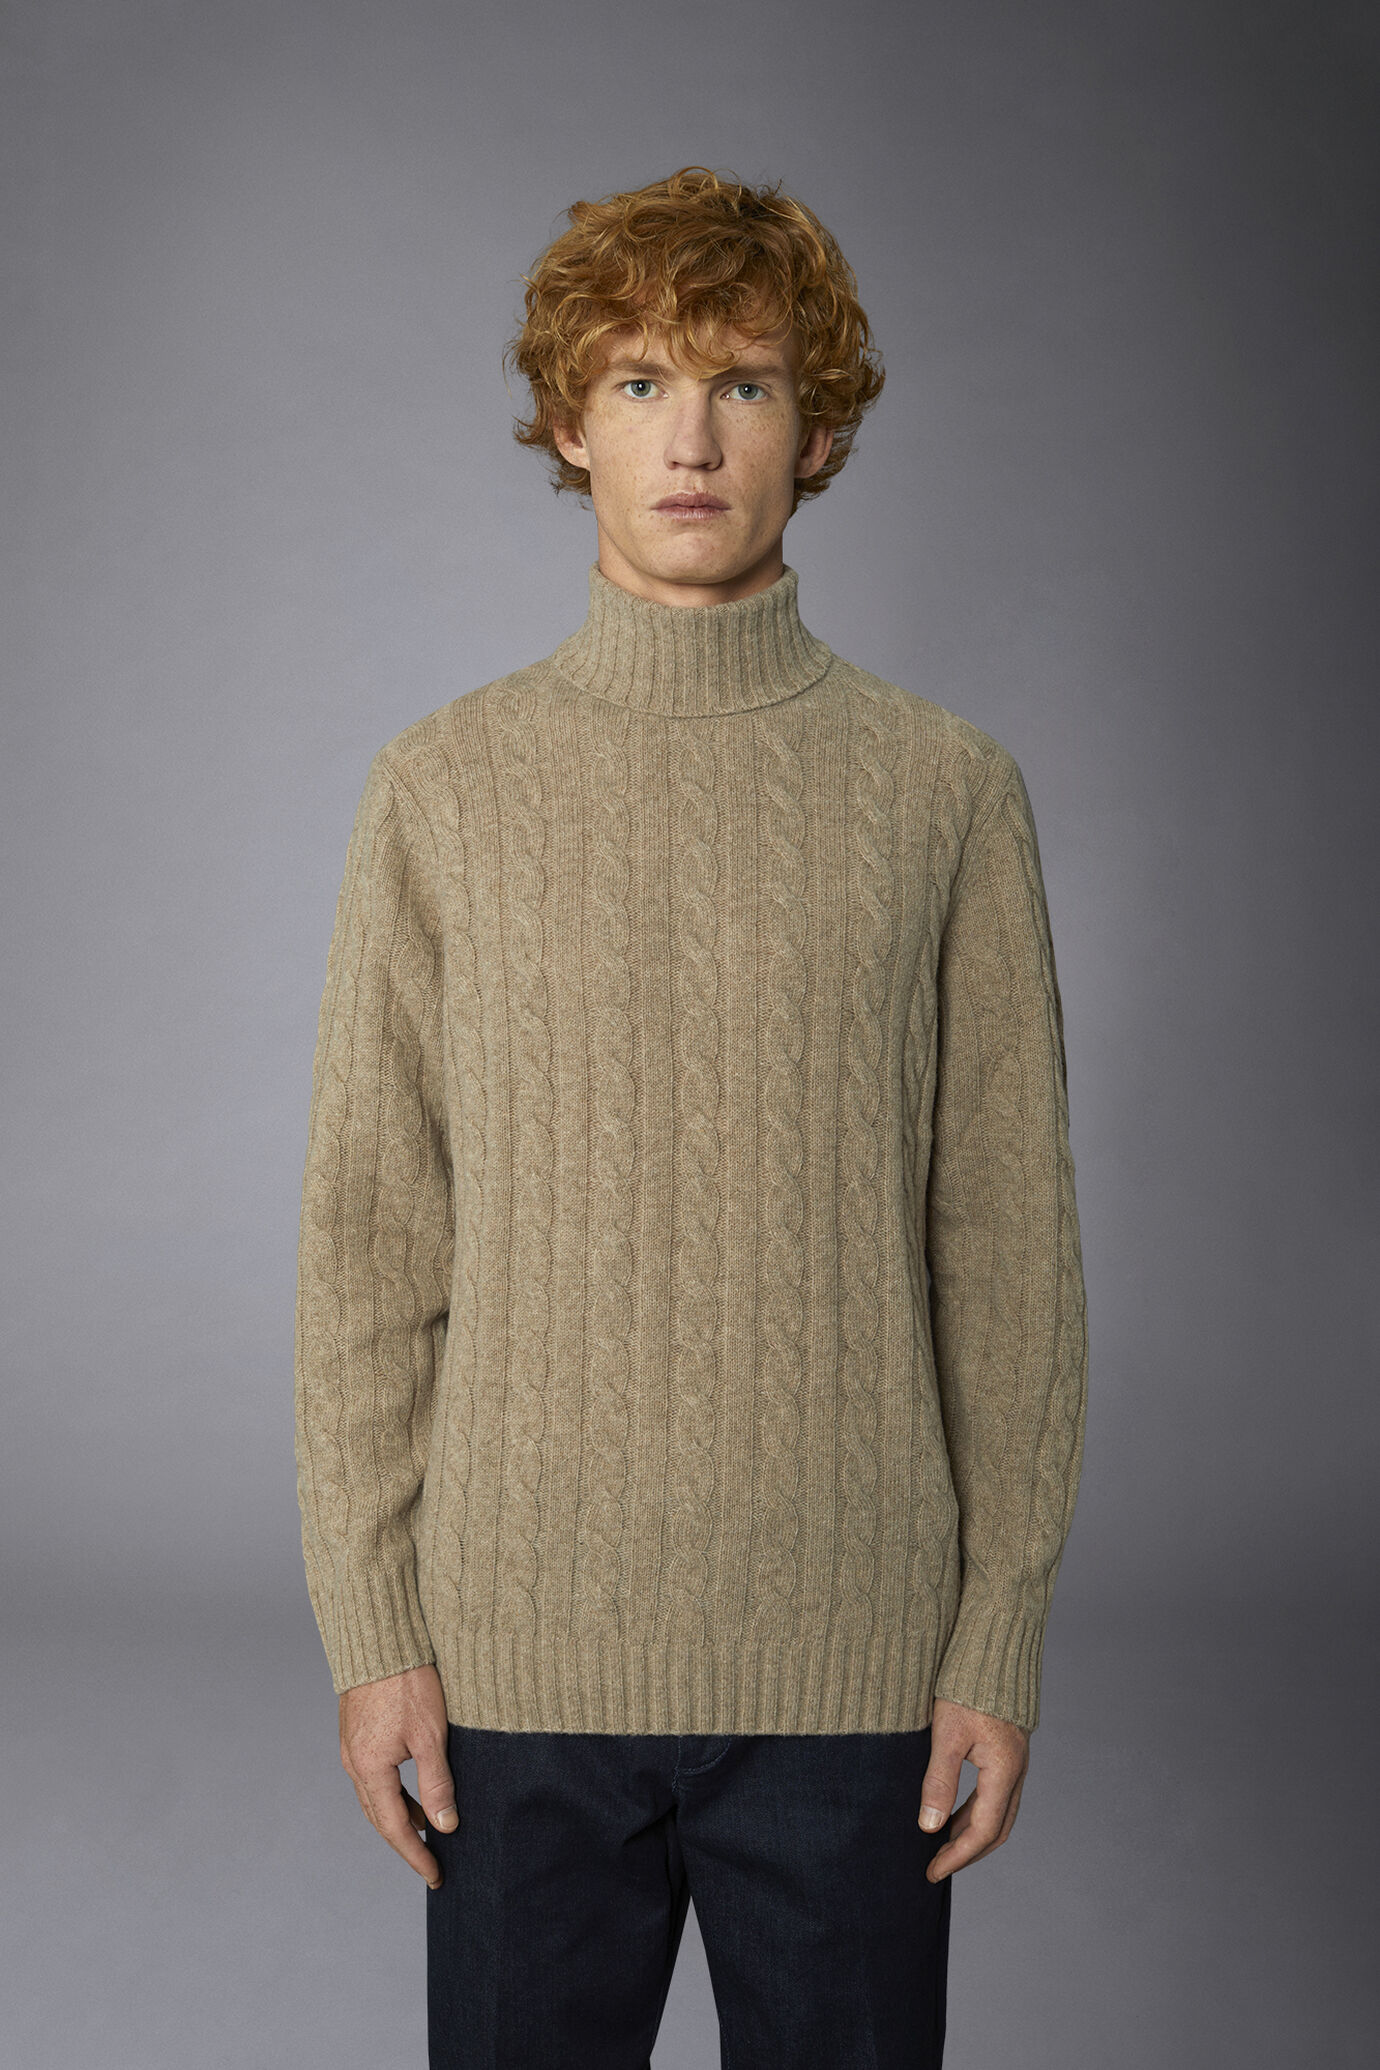 Maglia uomo a trecce collo alto in misto lana lambswool regular fit image number 3